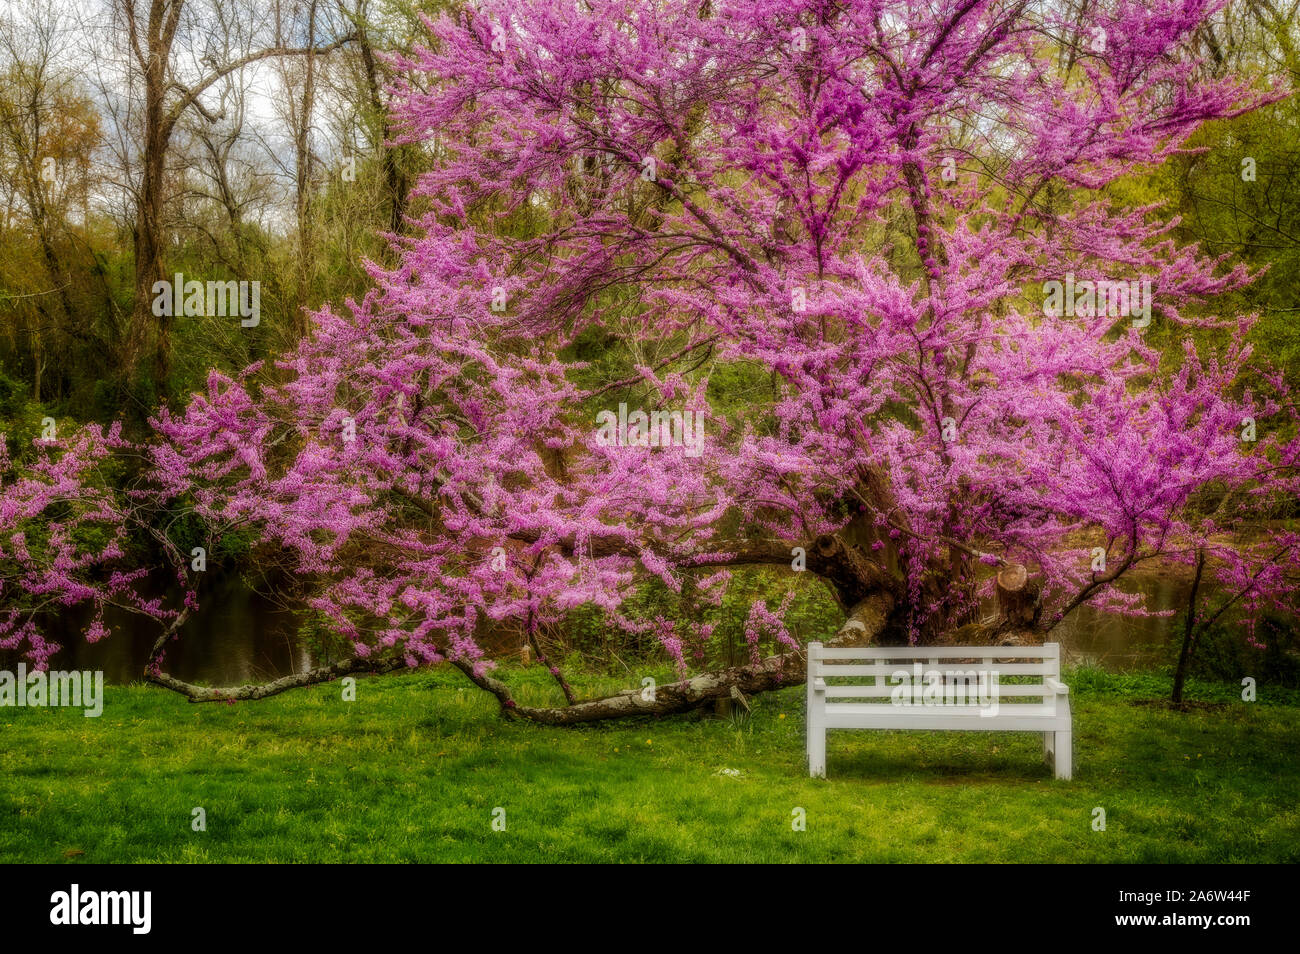 Redbud Tree au printemps - Vue d'un banc en bois blanc vide sous un arbre en fleurs Redbud. Cercis canadensis, est l'est de redbud. Banque D'Images